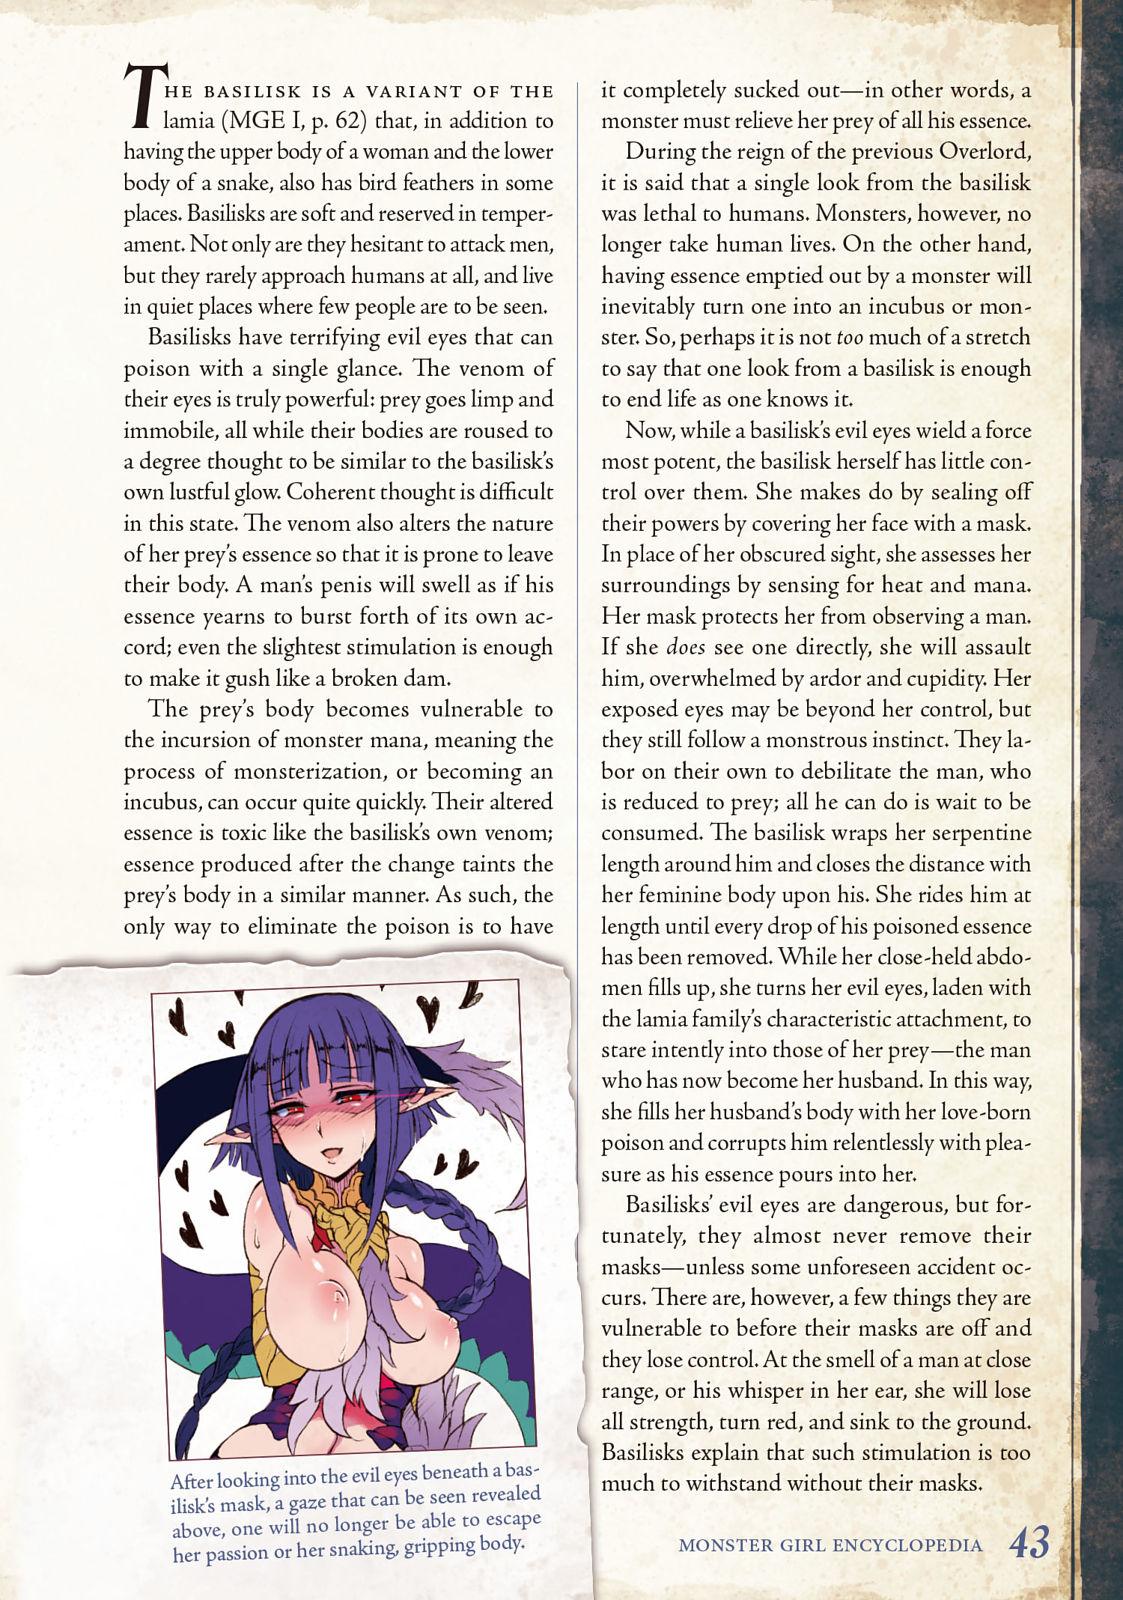 Monster Girl Encyclopedia Vol. 2 43